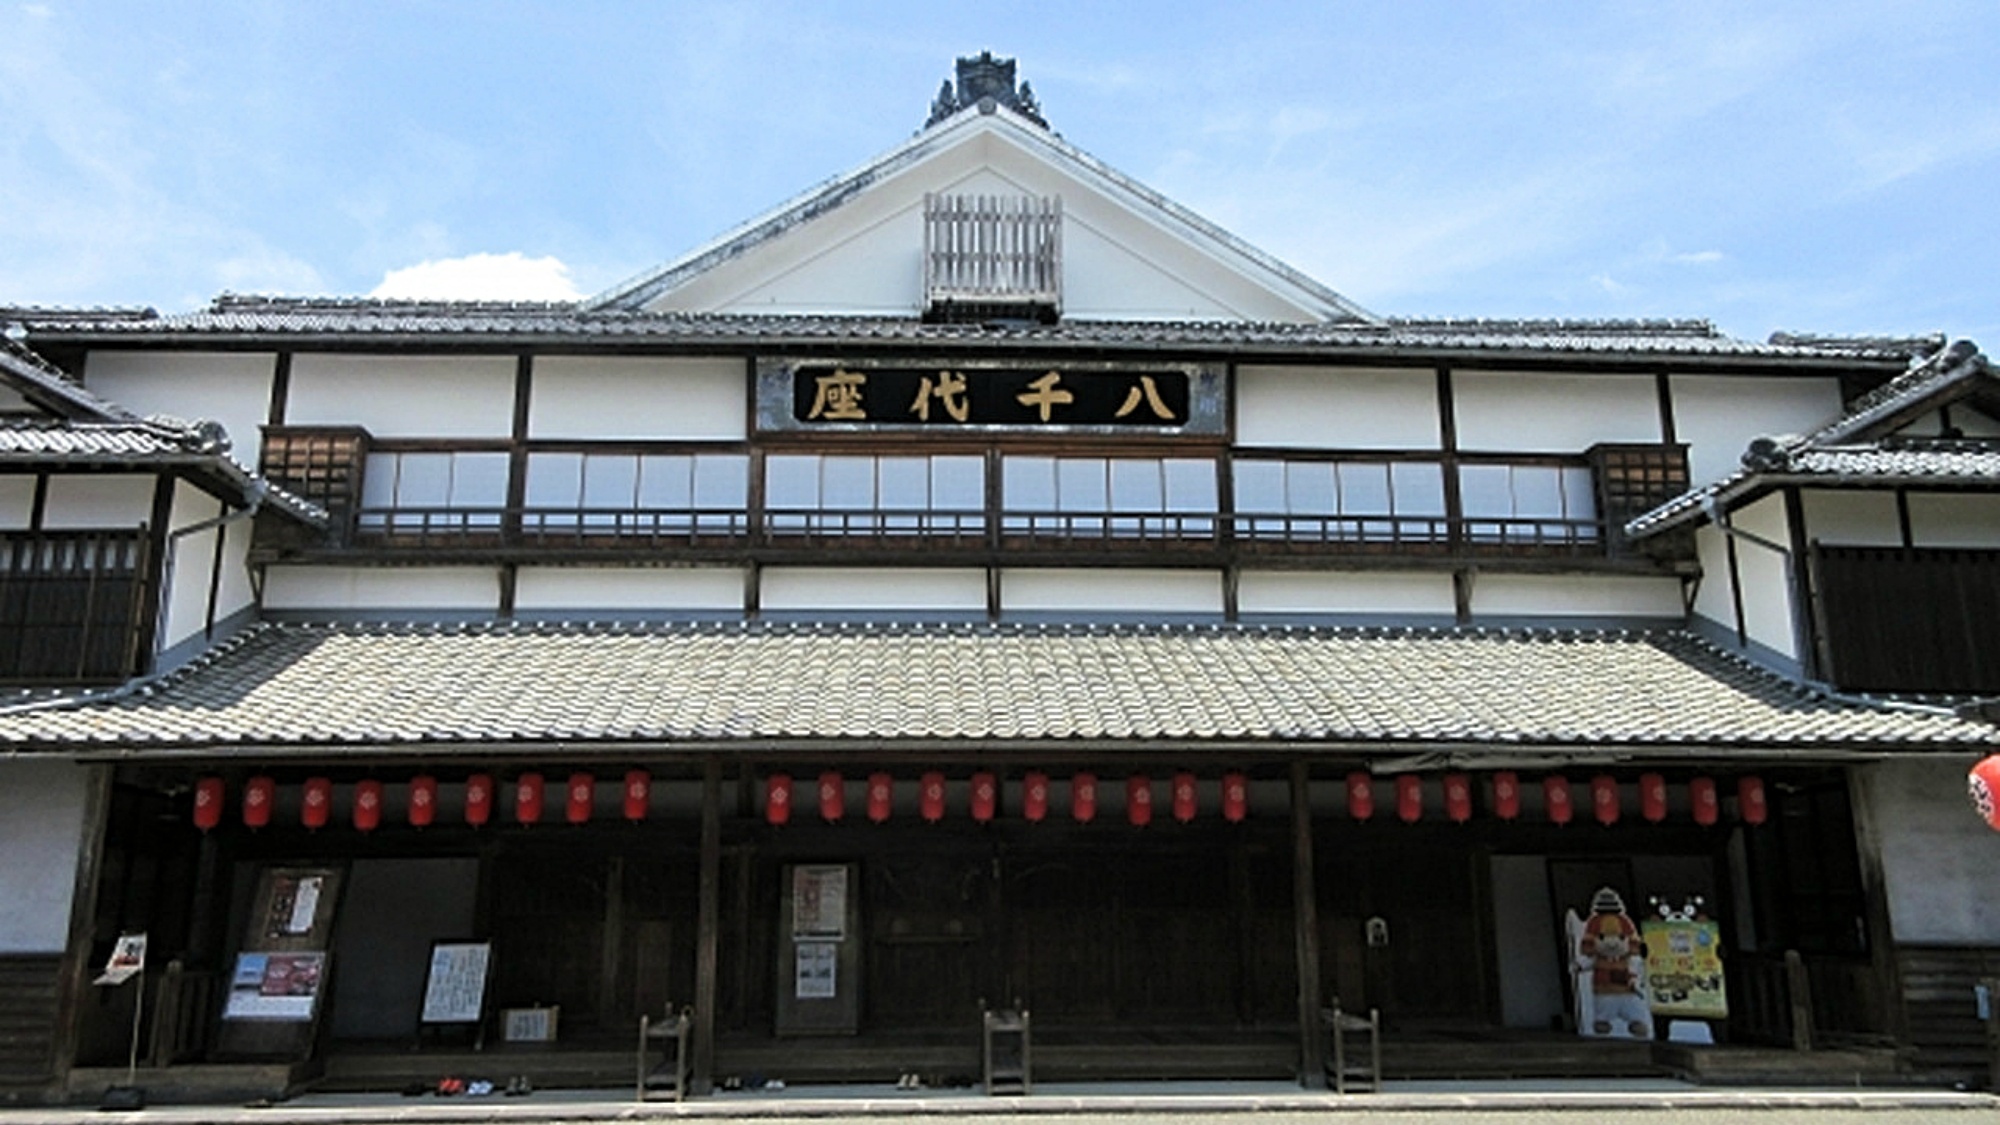 【八千代座】熊本県山鹿市にある芝居小屋。88年に国の重要文化財に指定。当館よりお車で約30分。